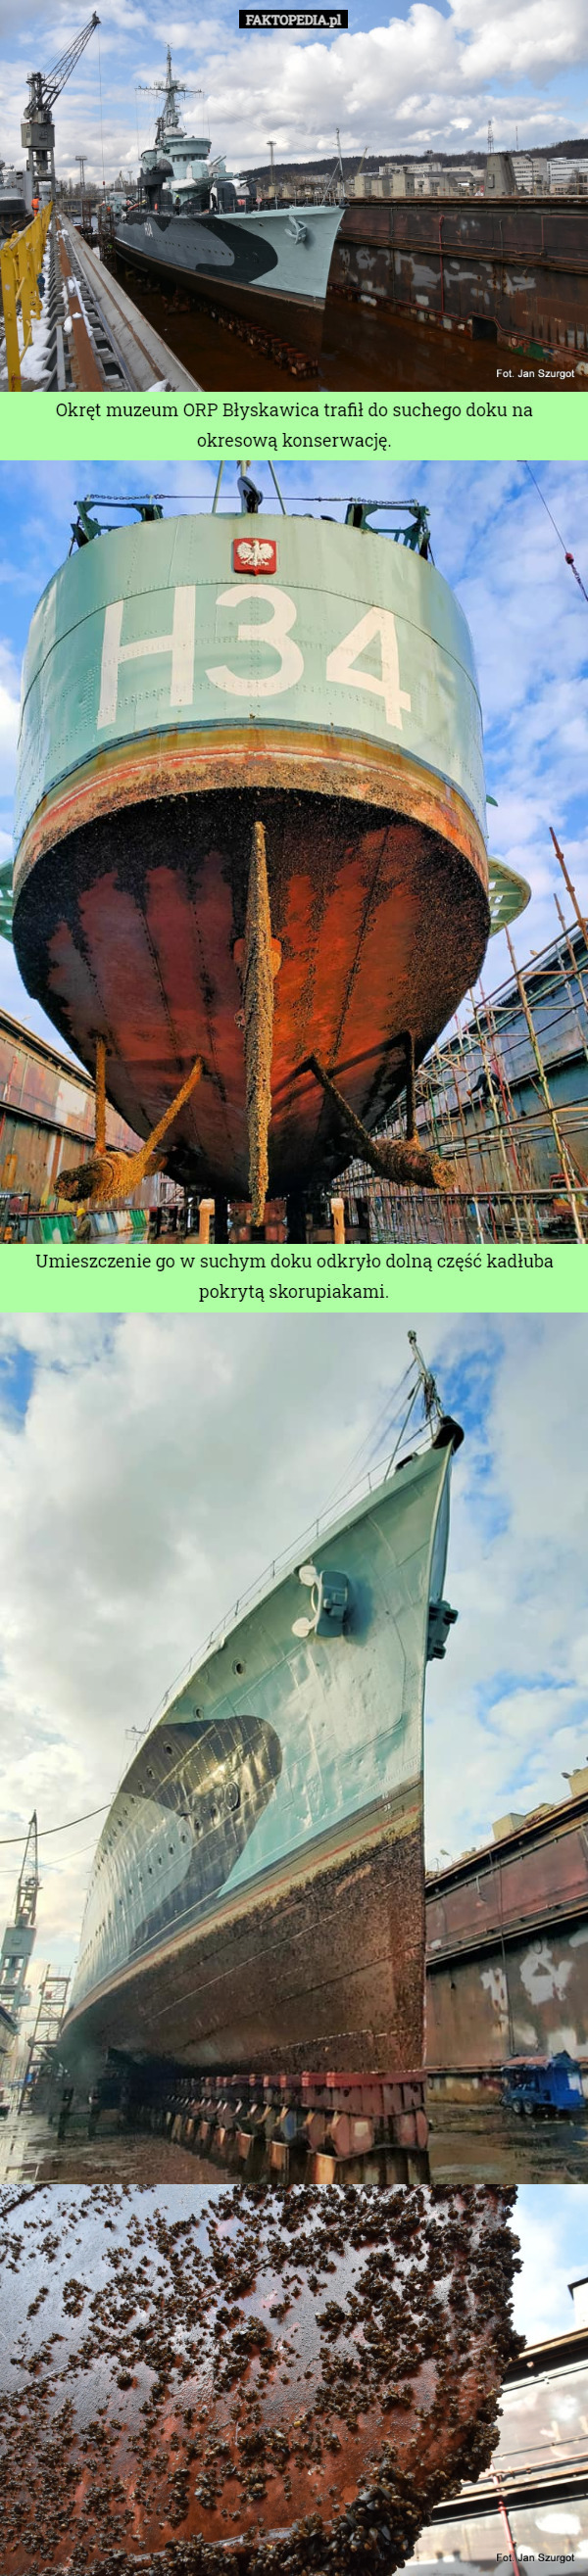 Okręt muzeum ORP Błyskawica trafił do suchego doku na okresową konserwację.